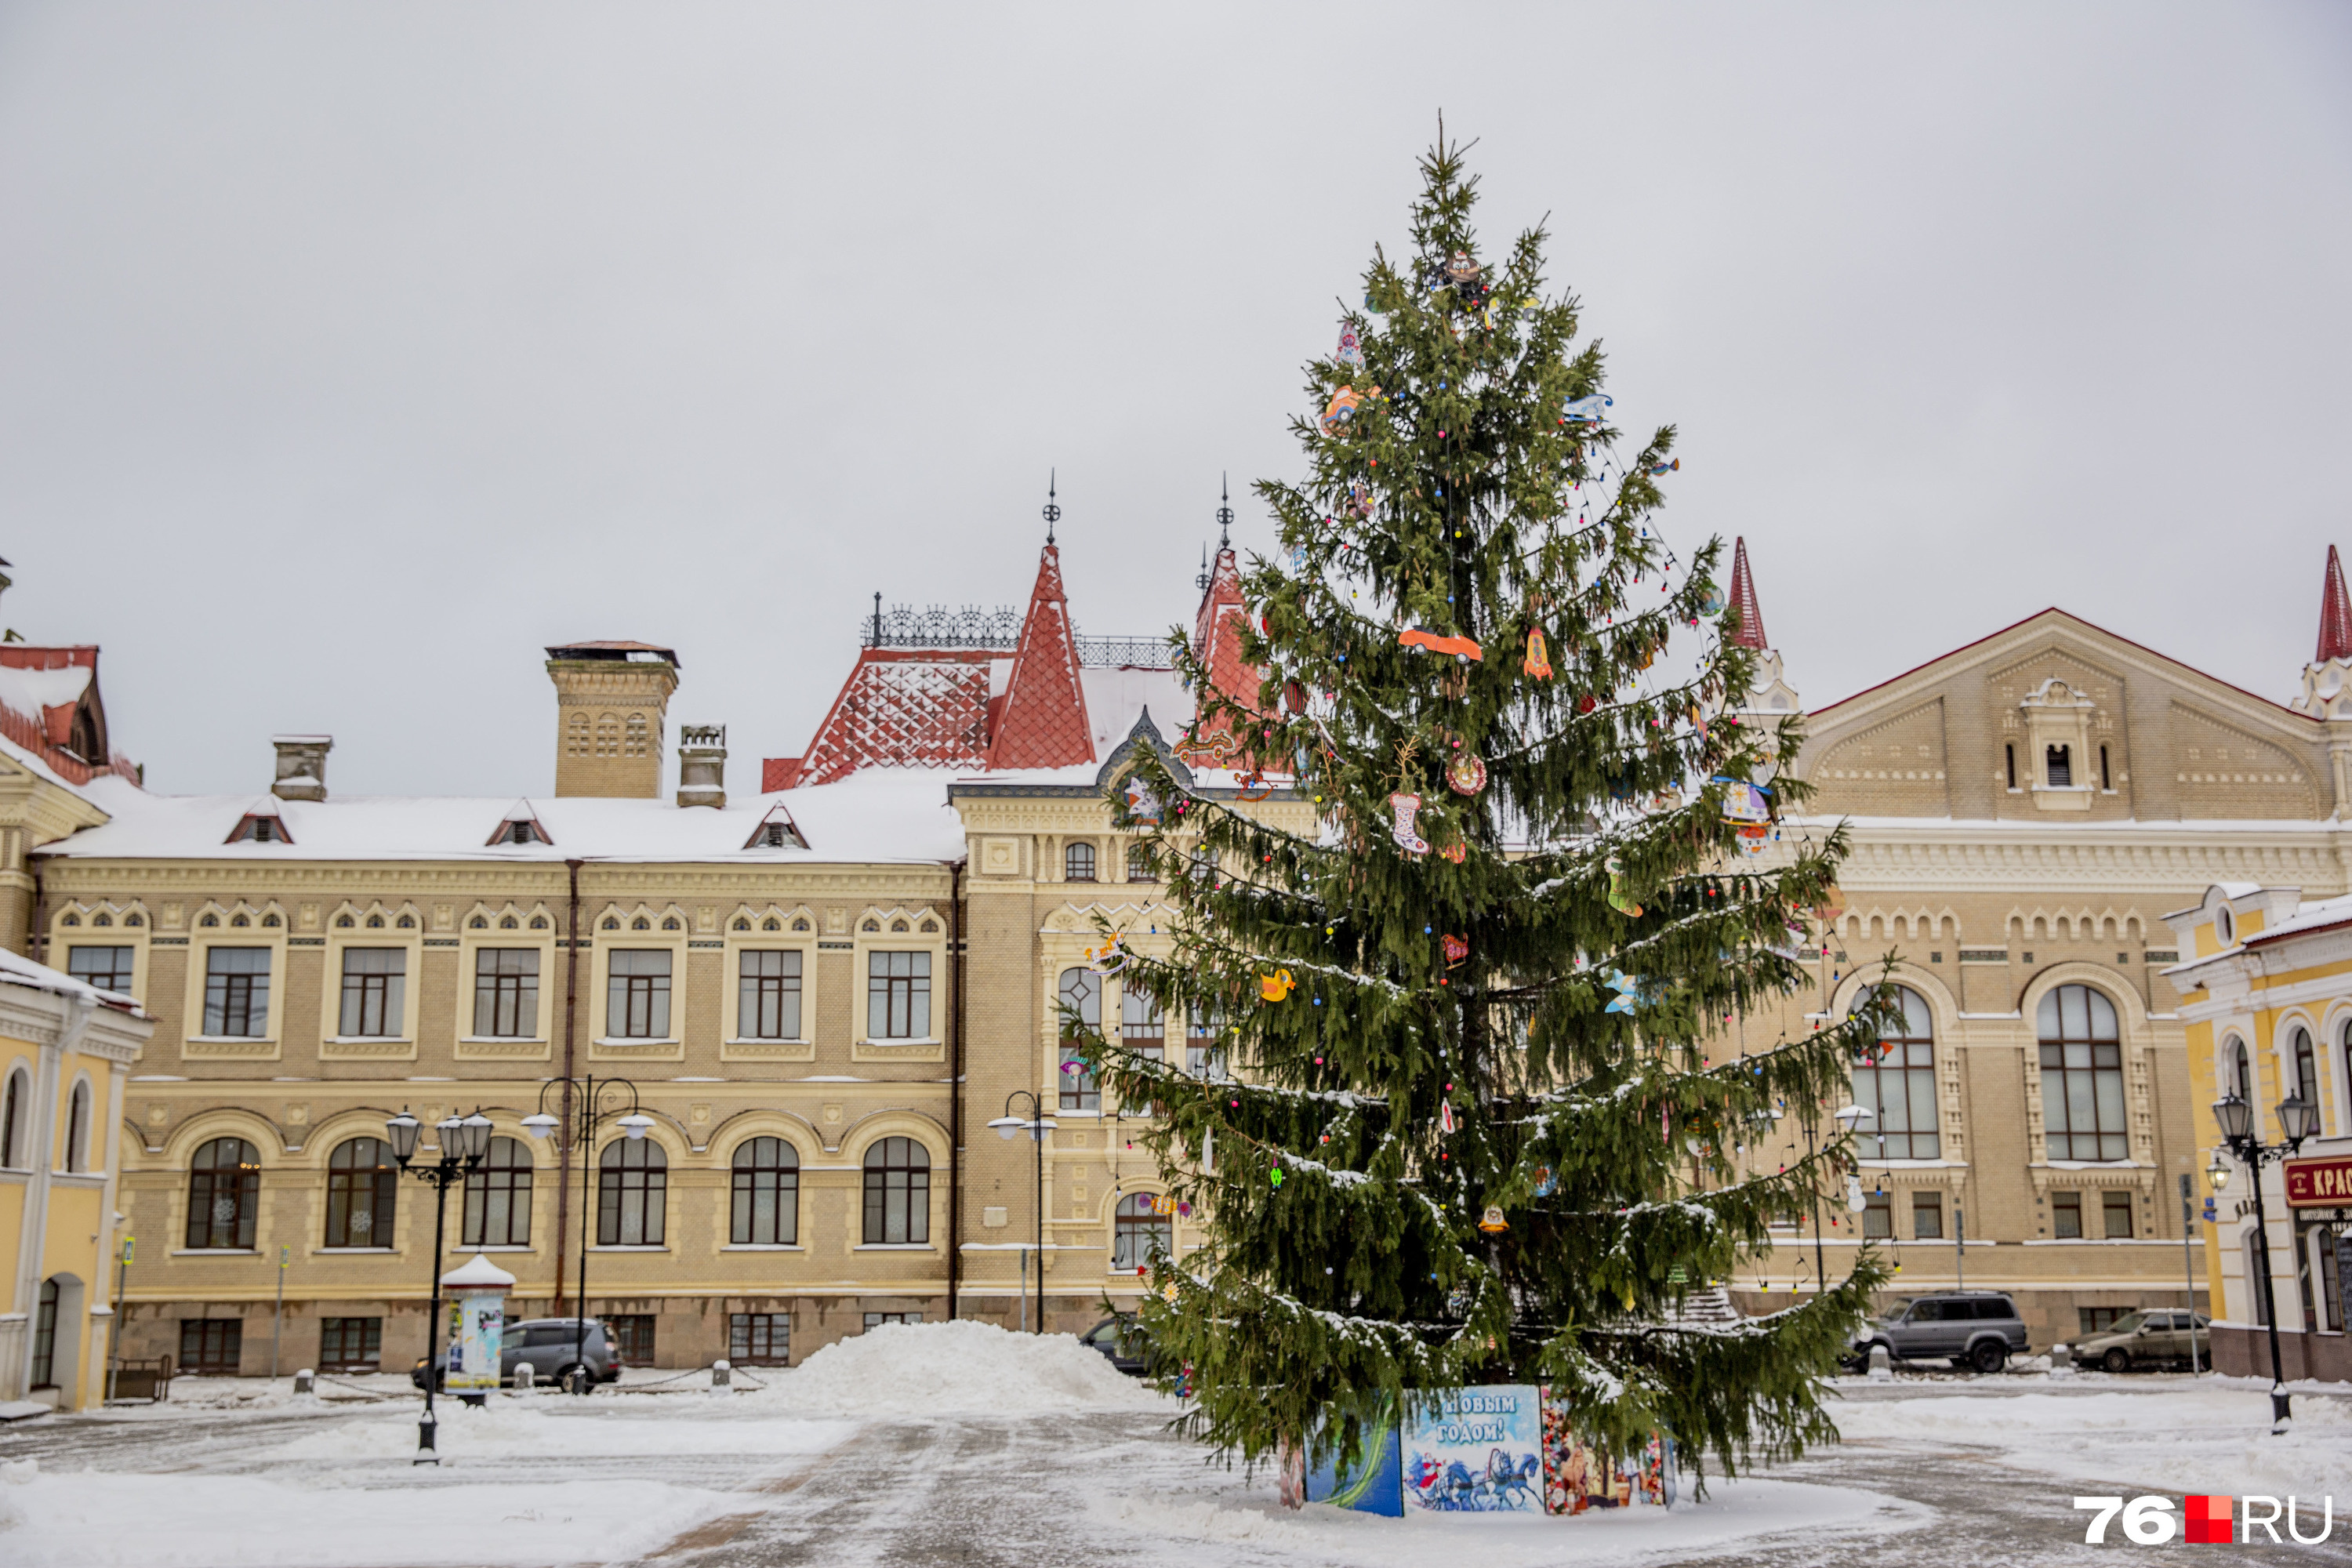 Такая роскошная елочка стоит в центре Рыбинска на Красной площади